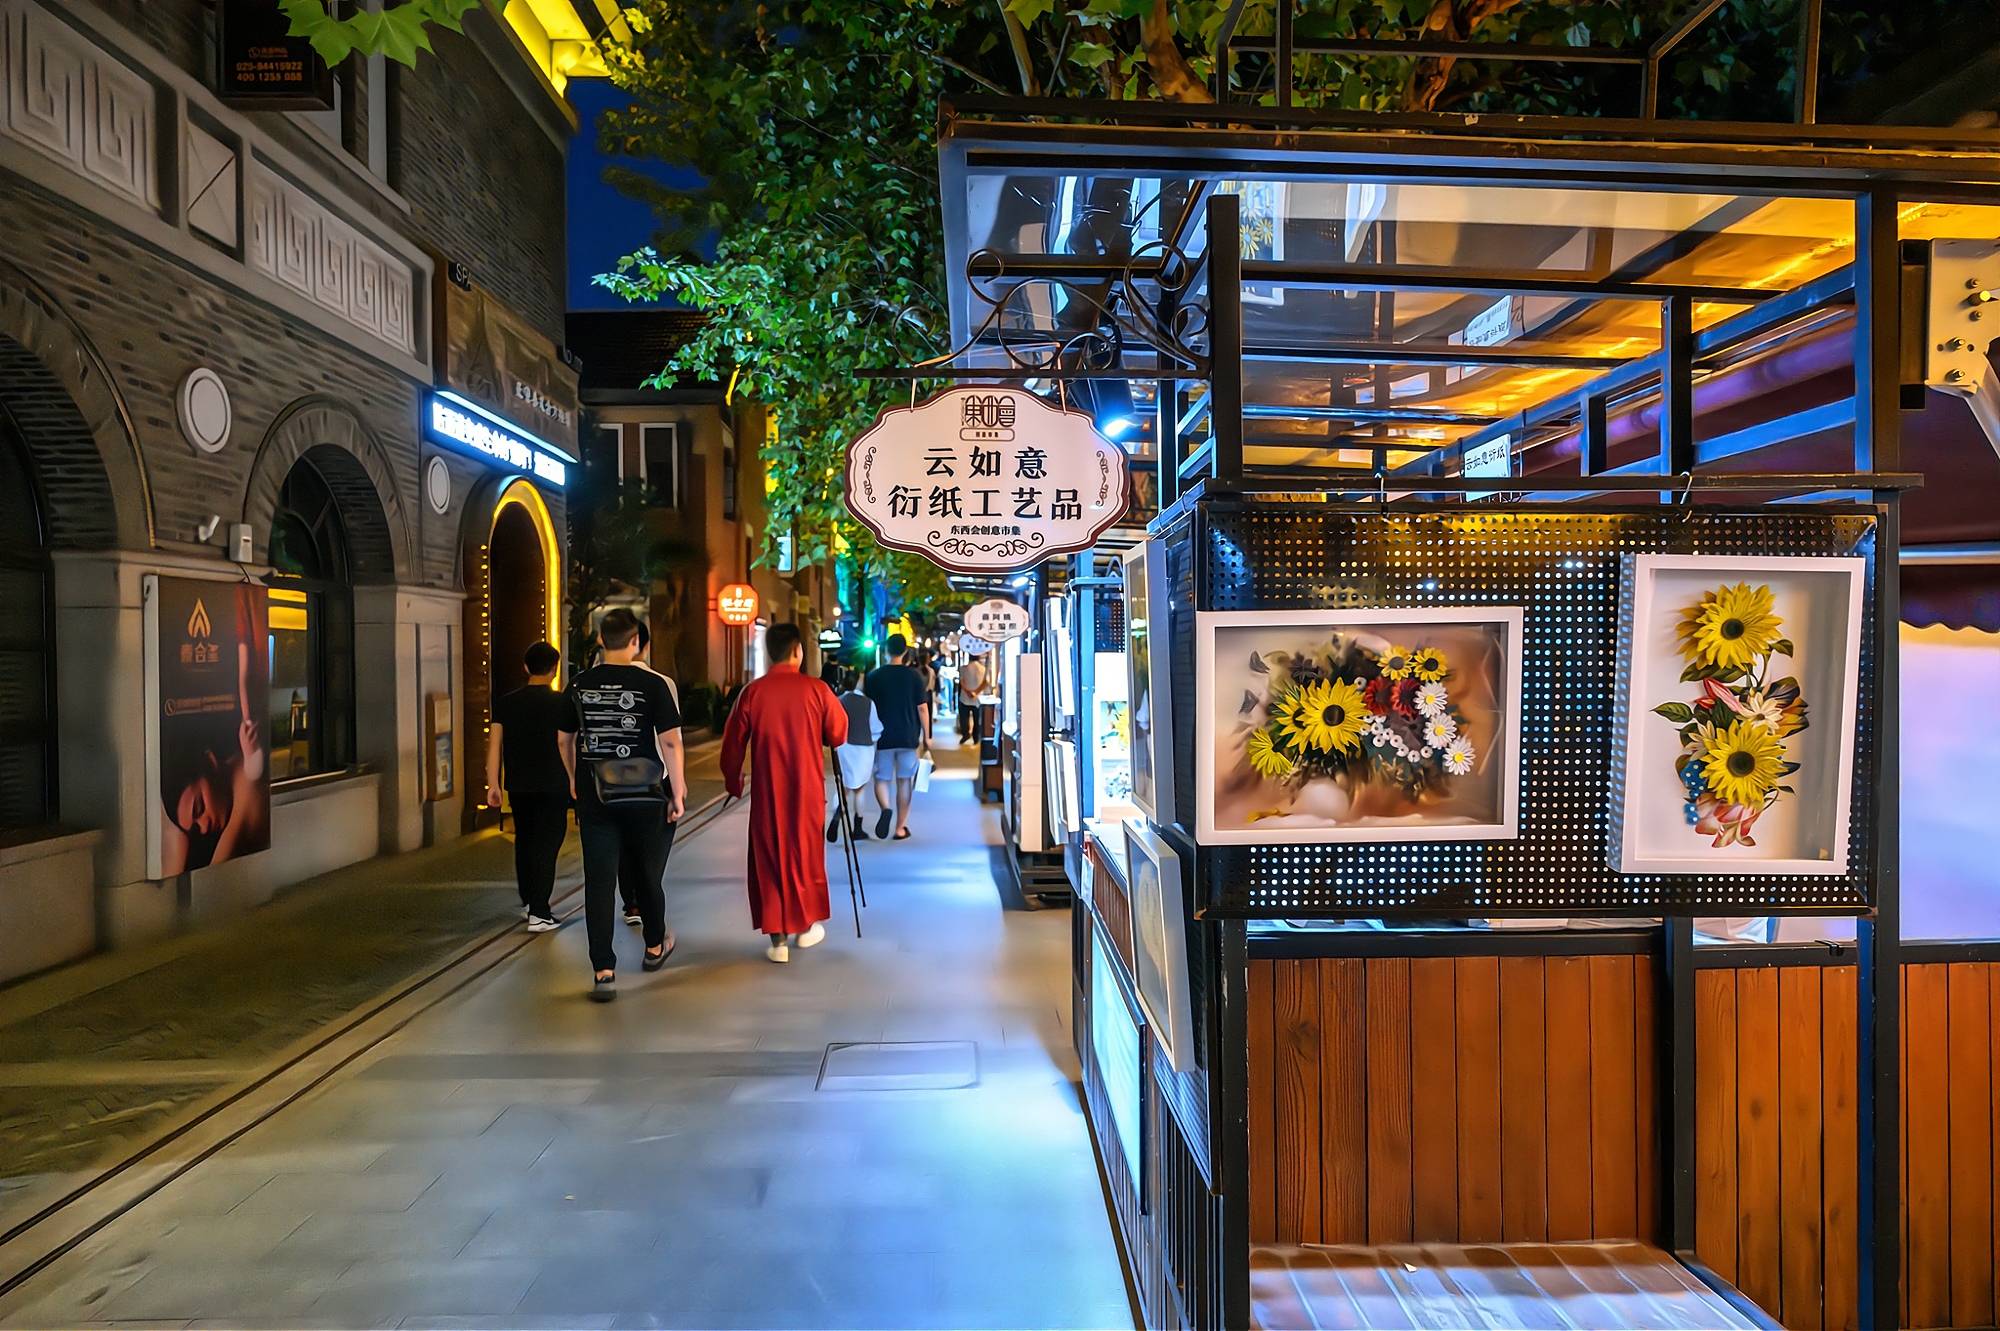 原创南京1912,曾经的酒吧一条街,如今的文艺特色街,你去过吗?